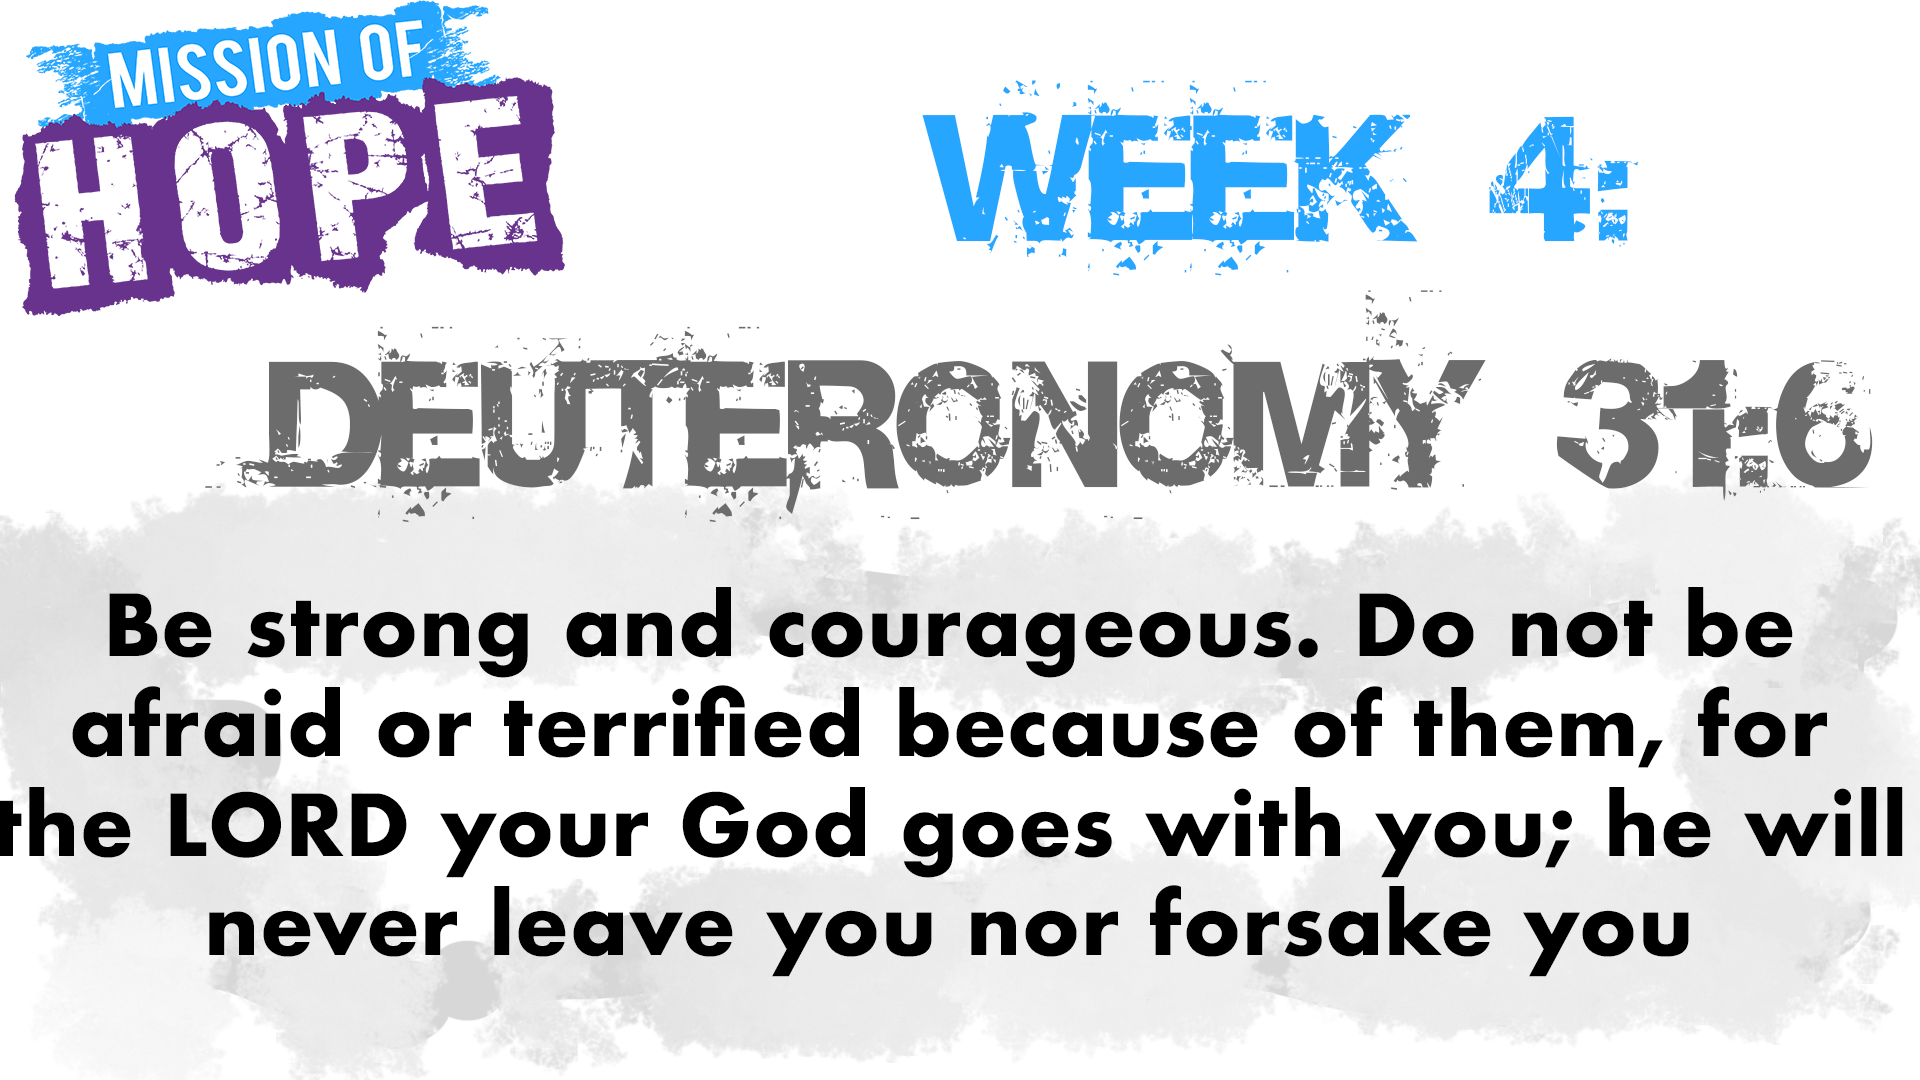 Deuteronomy 31:6 scripture quote